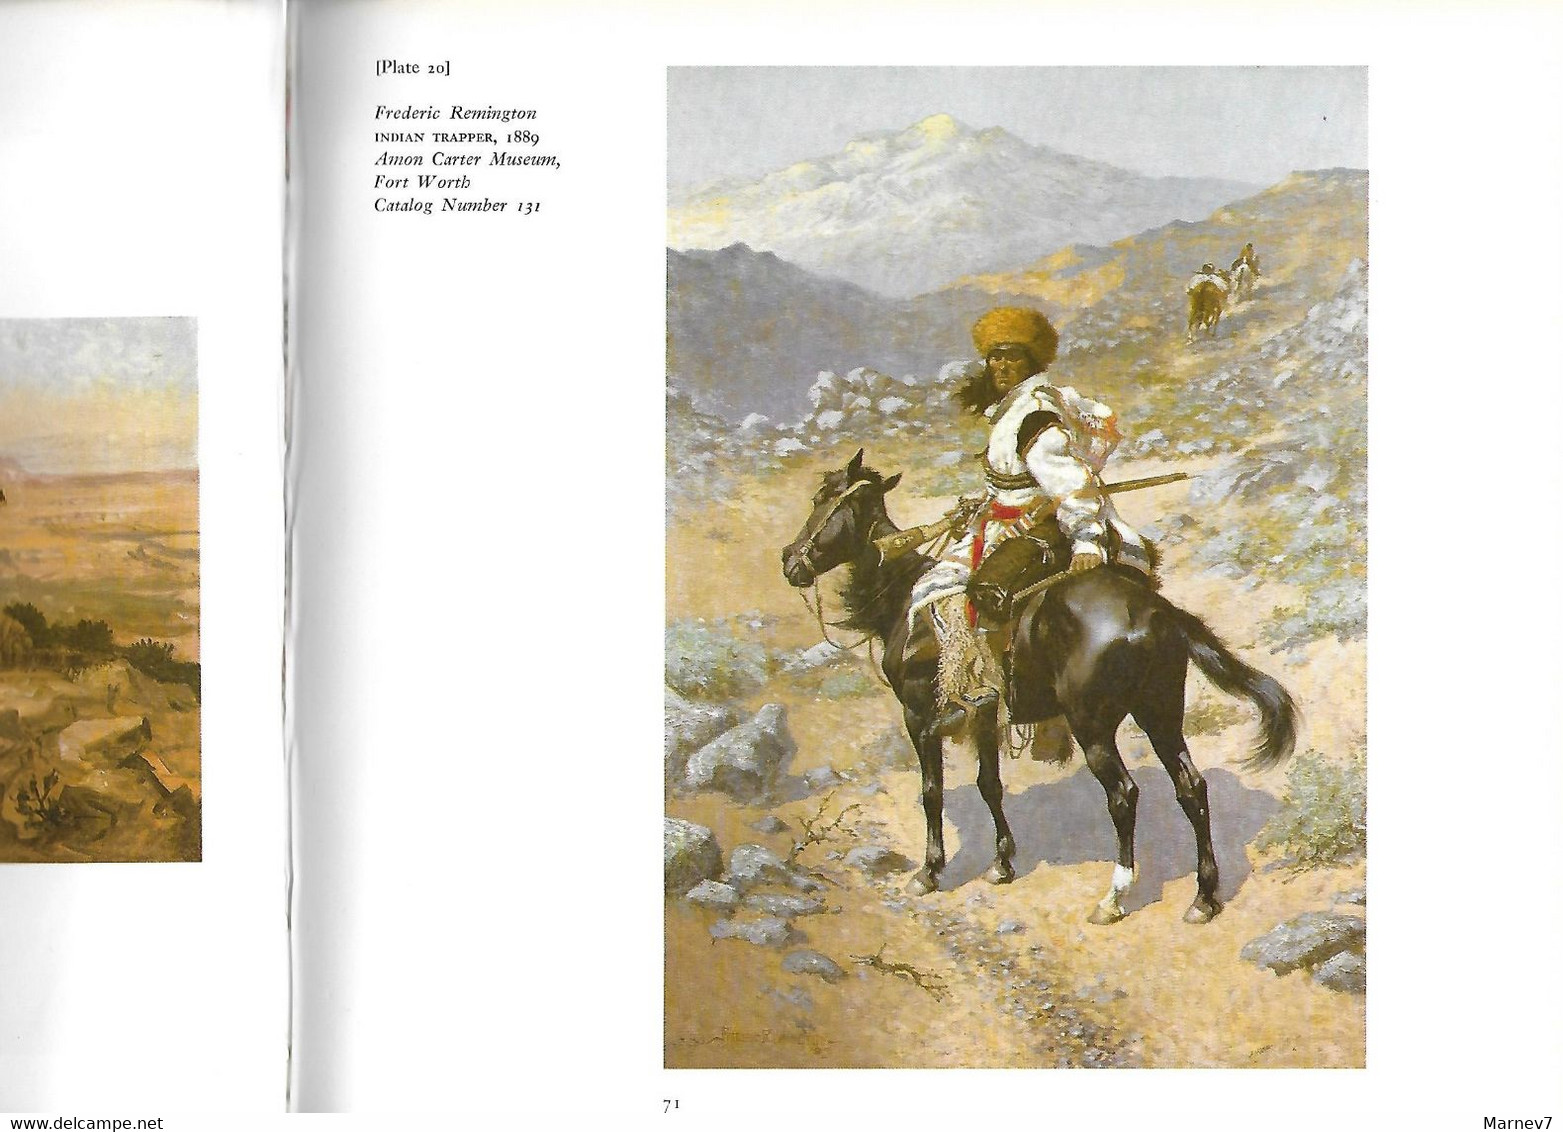 Livre En Anglais - The American West - L'Ouest Américain - Far West - USA - Peintres Catlin Remington Russel - - 1950-Heden